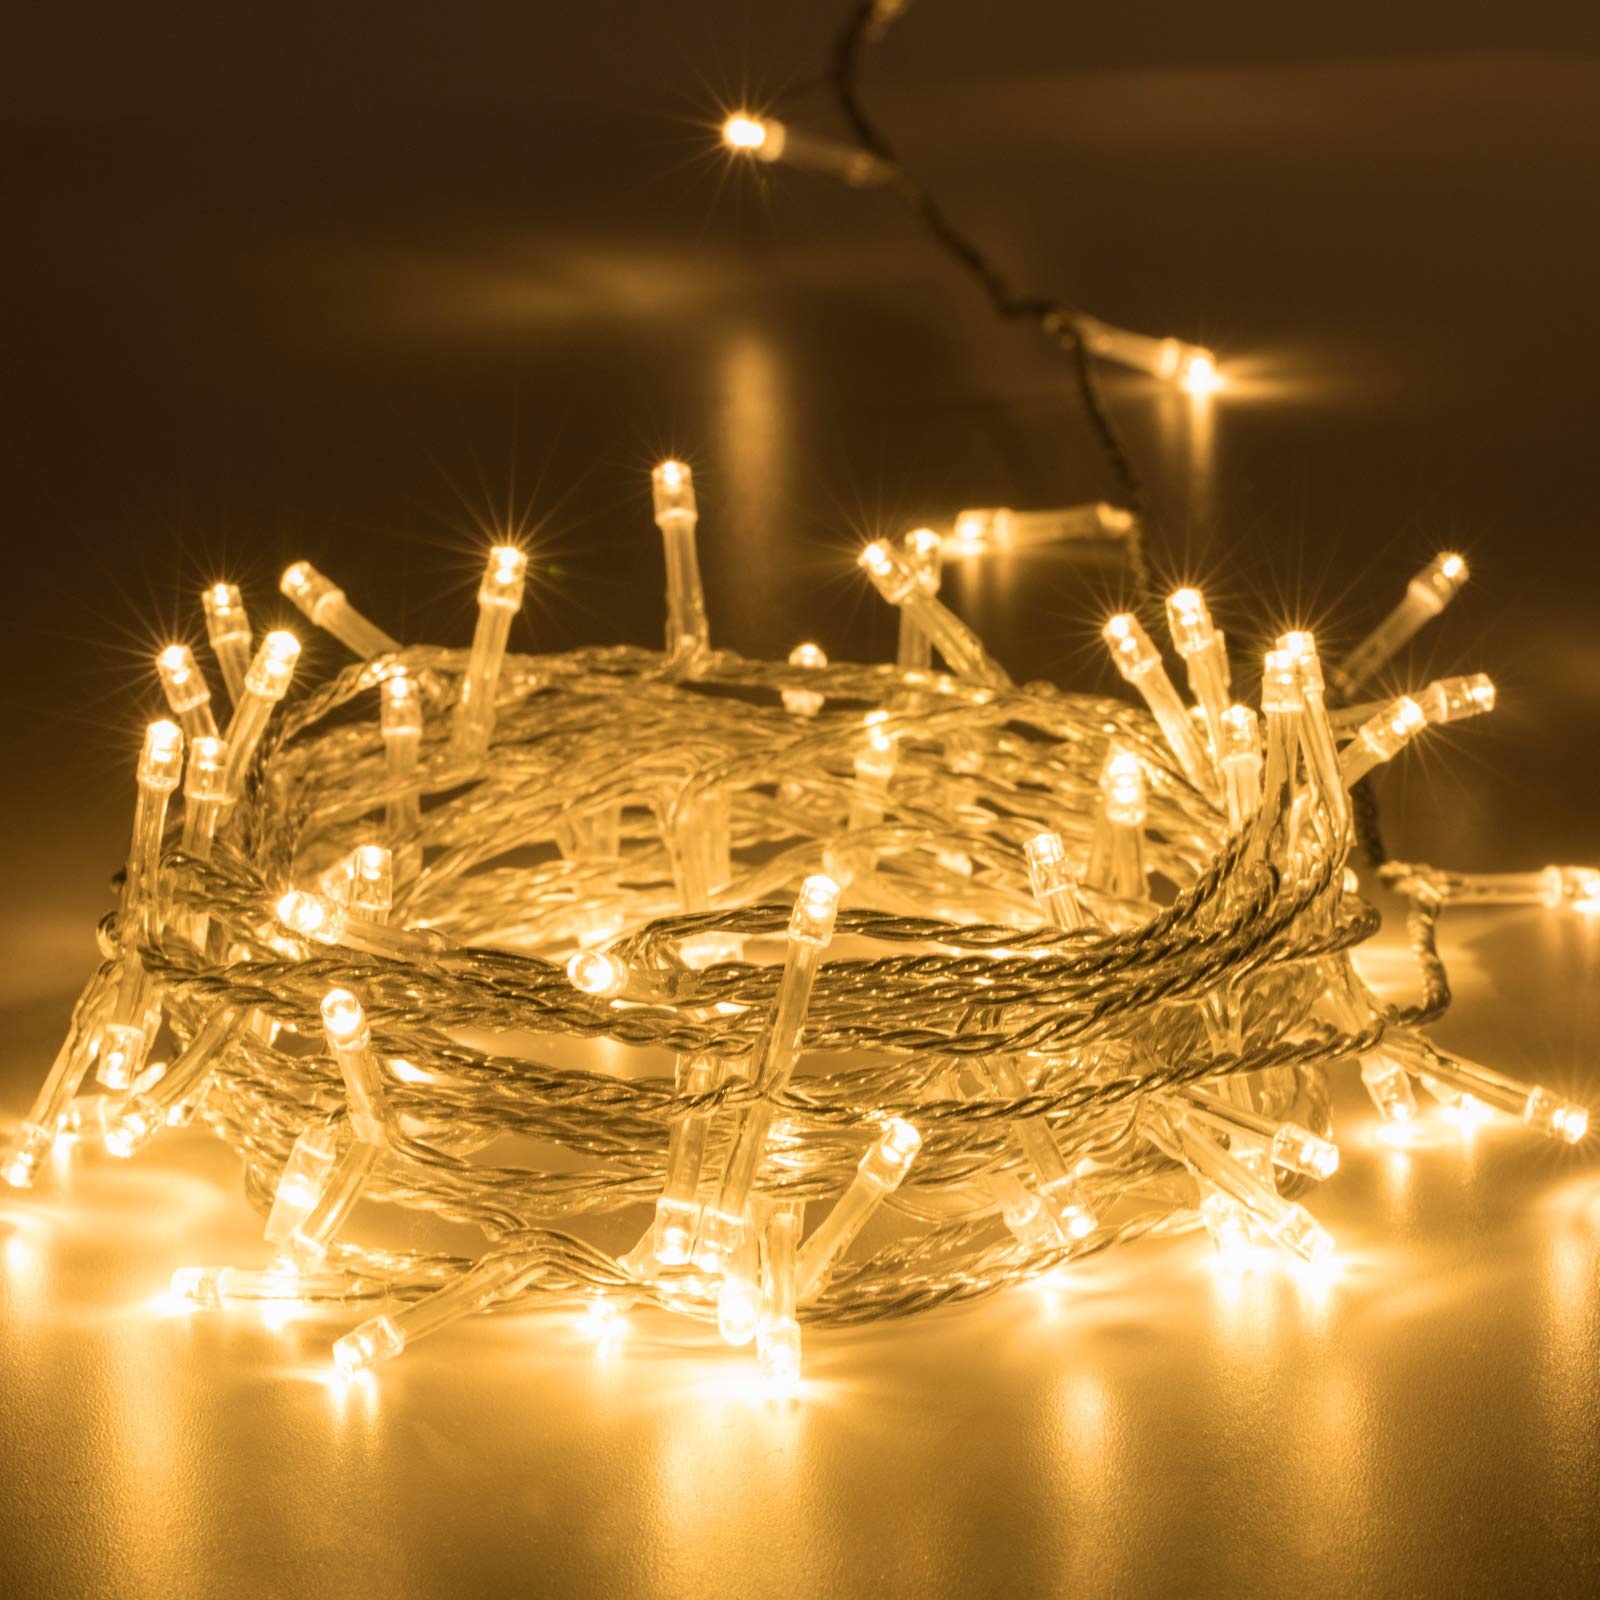 Avoalre 100 LEDs Lichterkette außen 10M, IP44 Wasserdicht warmweiß Lichterkette, 8 Modi mit Memoryfunktion Outdoor Weihnachtsbeleuchtung für Weihnachten Garten Party Geburtstag Hochzeit